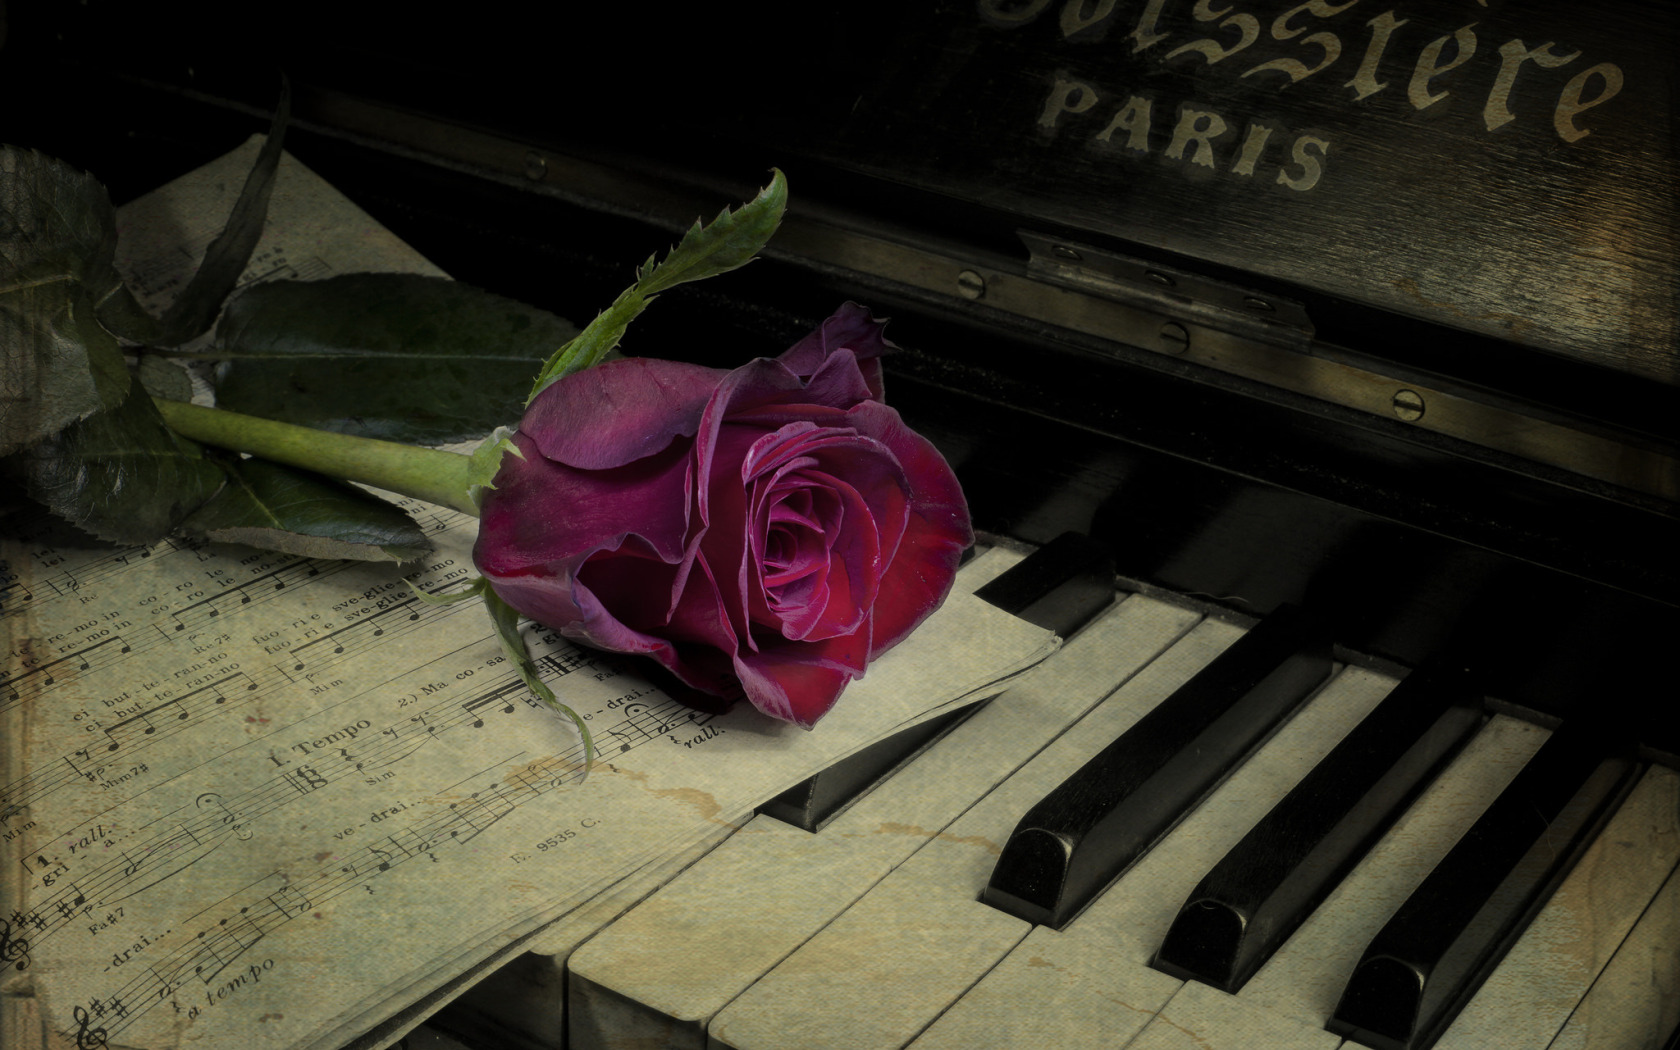 Цветы на пианино. Пианино с цветами. Пианино на рабочий стол. Цветы на рояле.